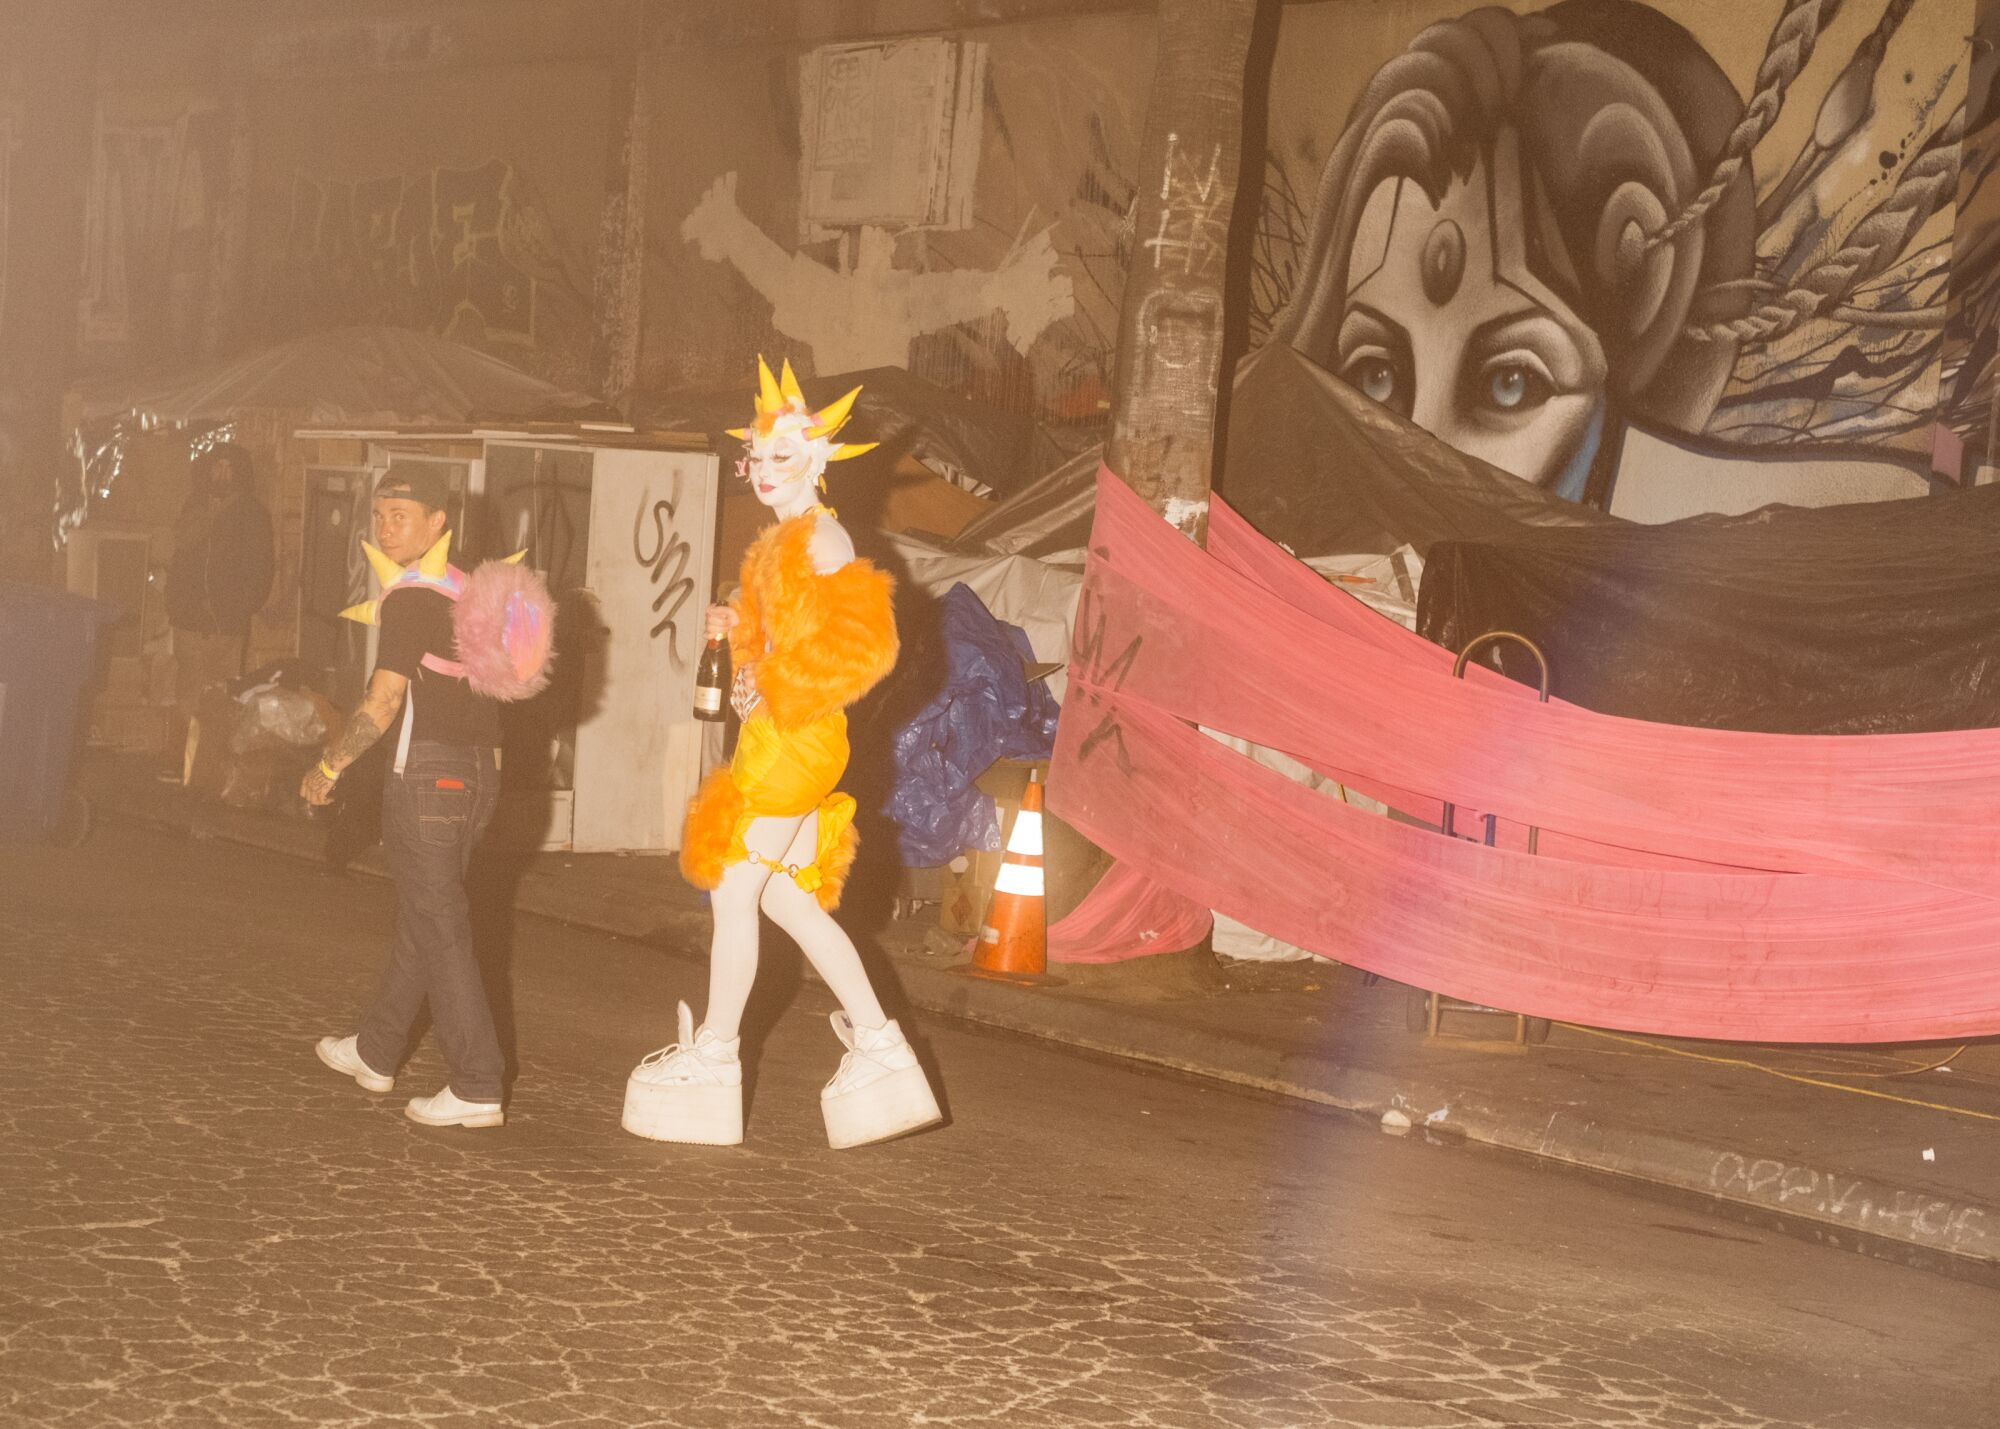 Mọi người trong trang phục xa hoa đi bộ bên ngoài một nhà kho có tranh tường trên đường phố vào ban đêm ở LA.